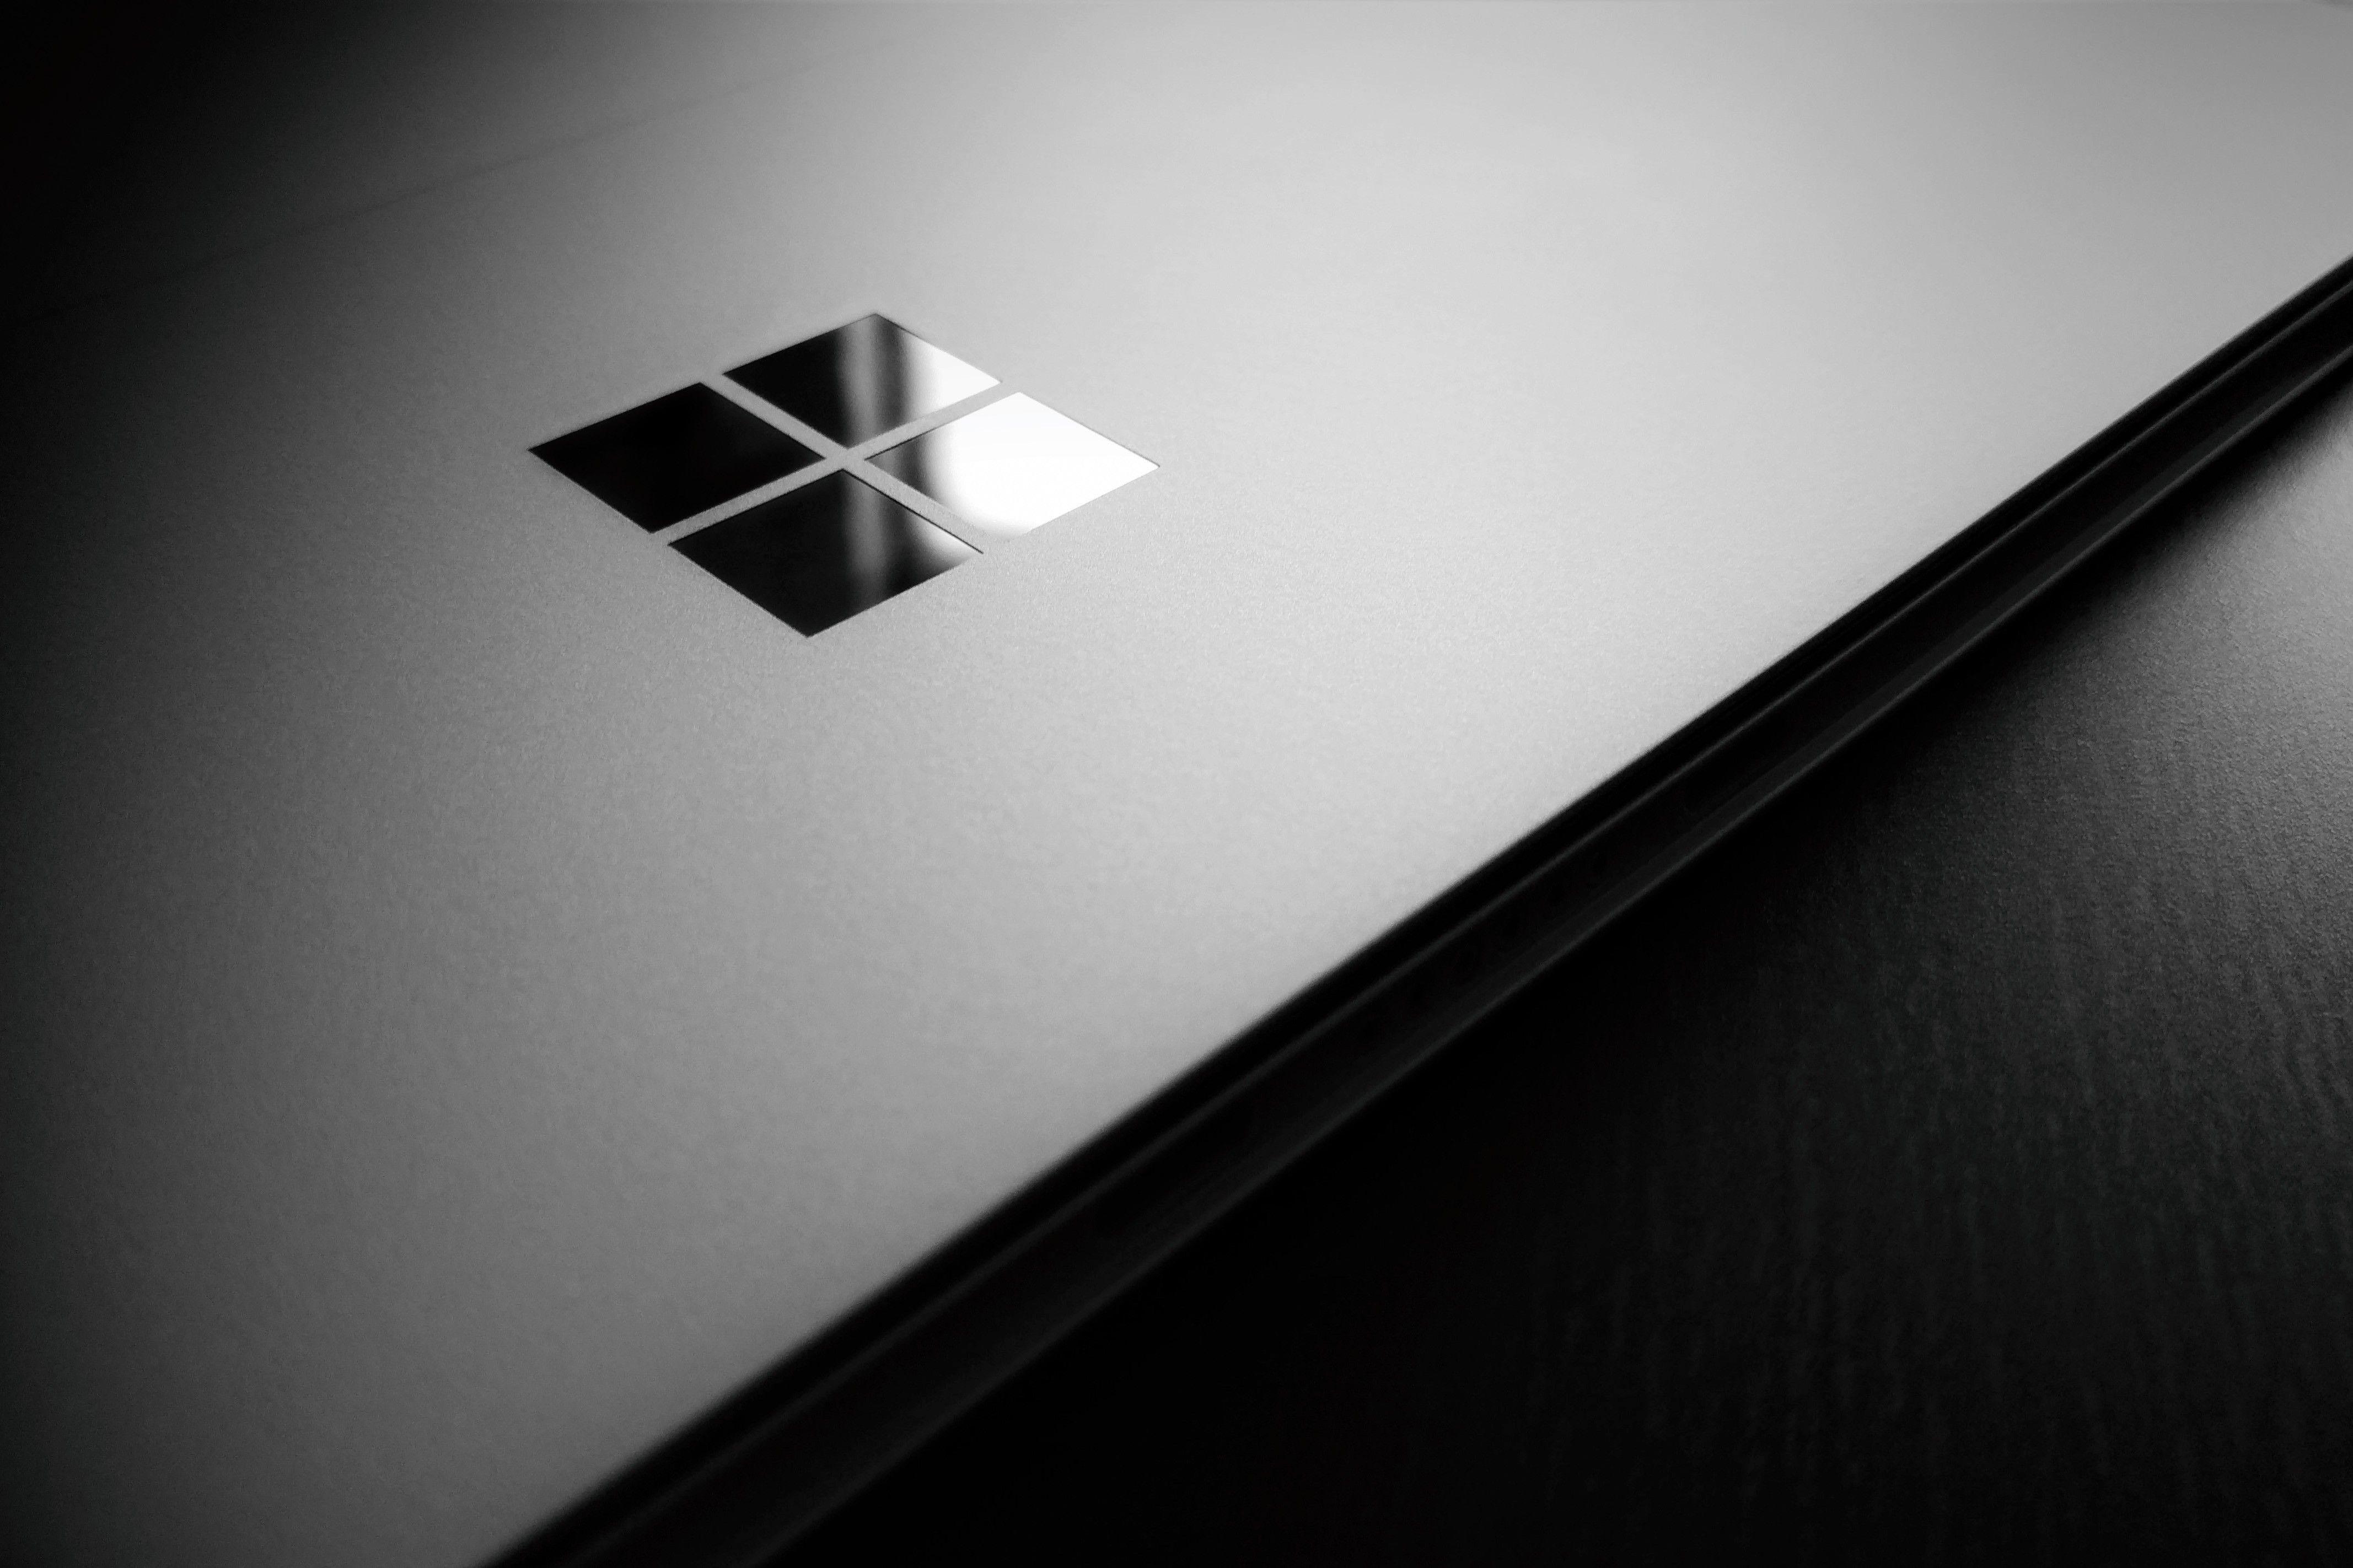 Windows Surface Logo - Wallpaper : wooden surface, logo, circle, laptop, Microsoft Windows ...